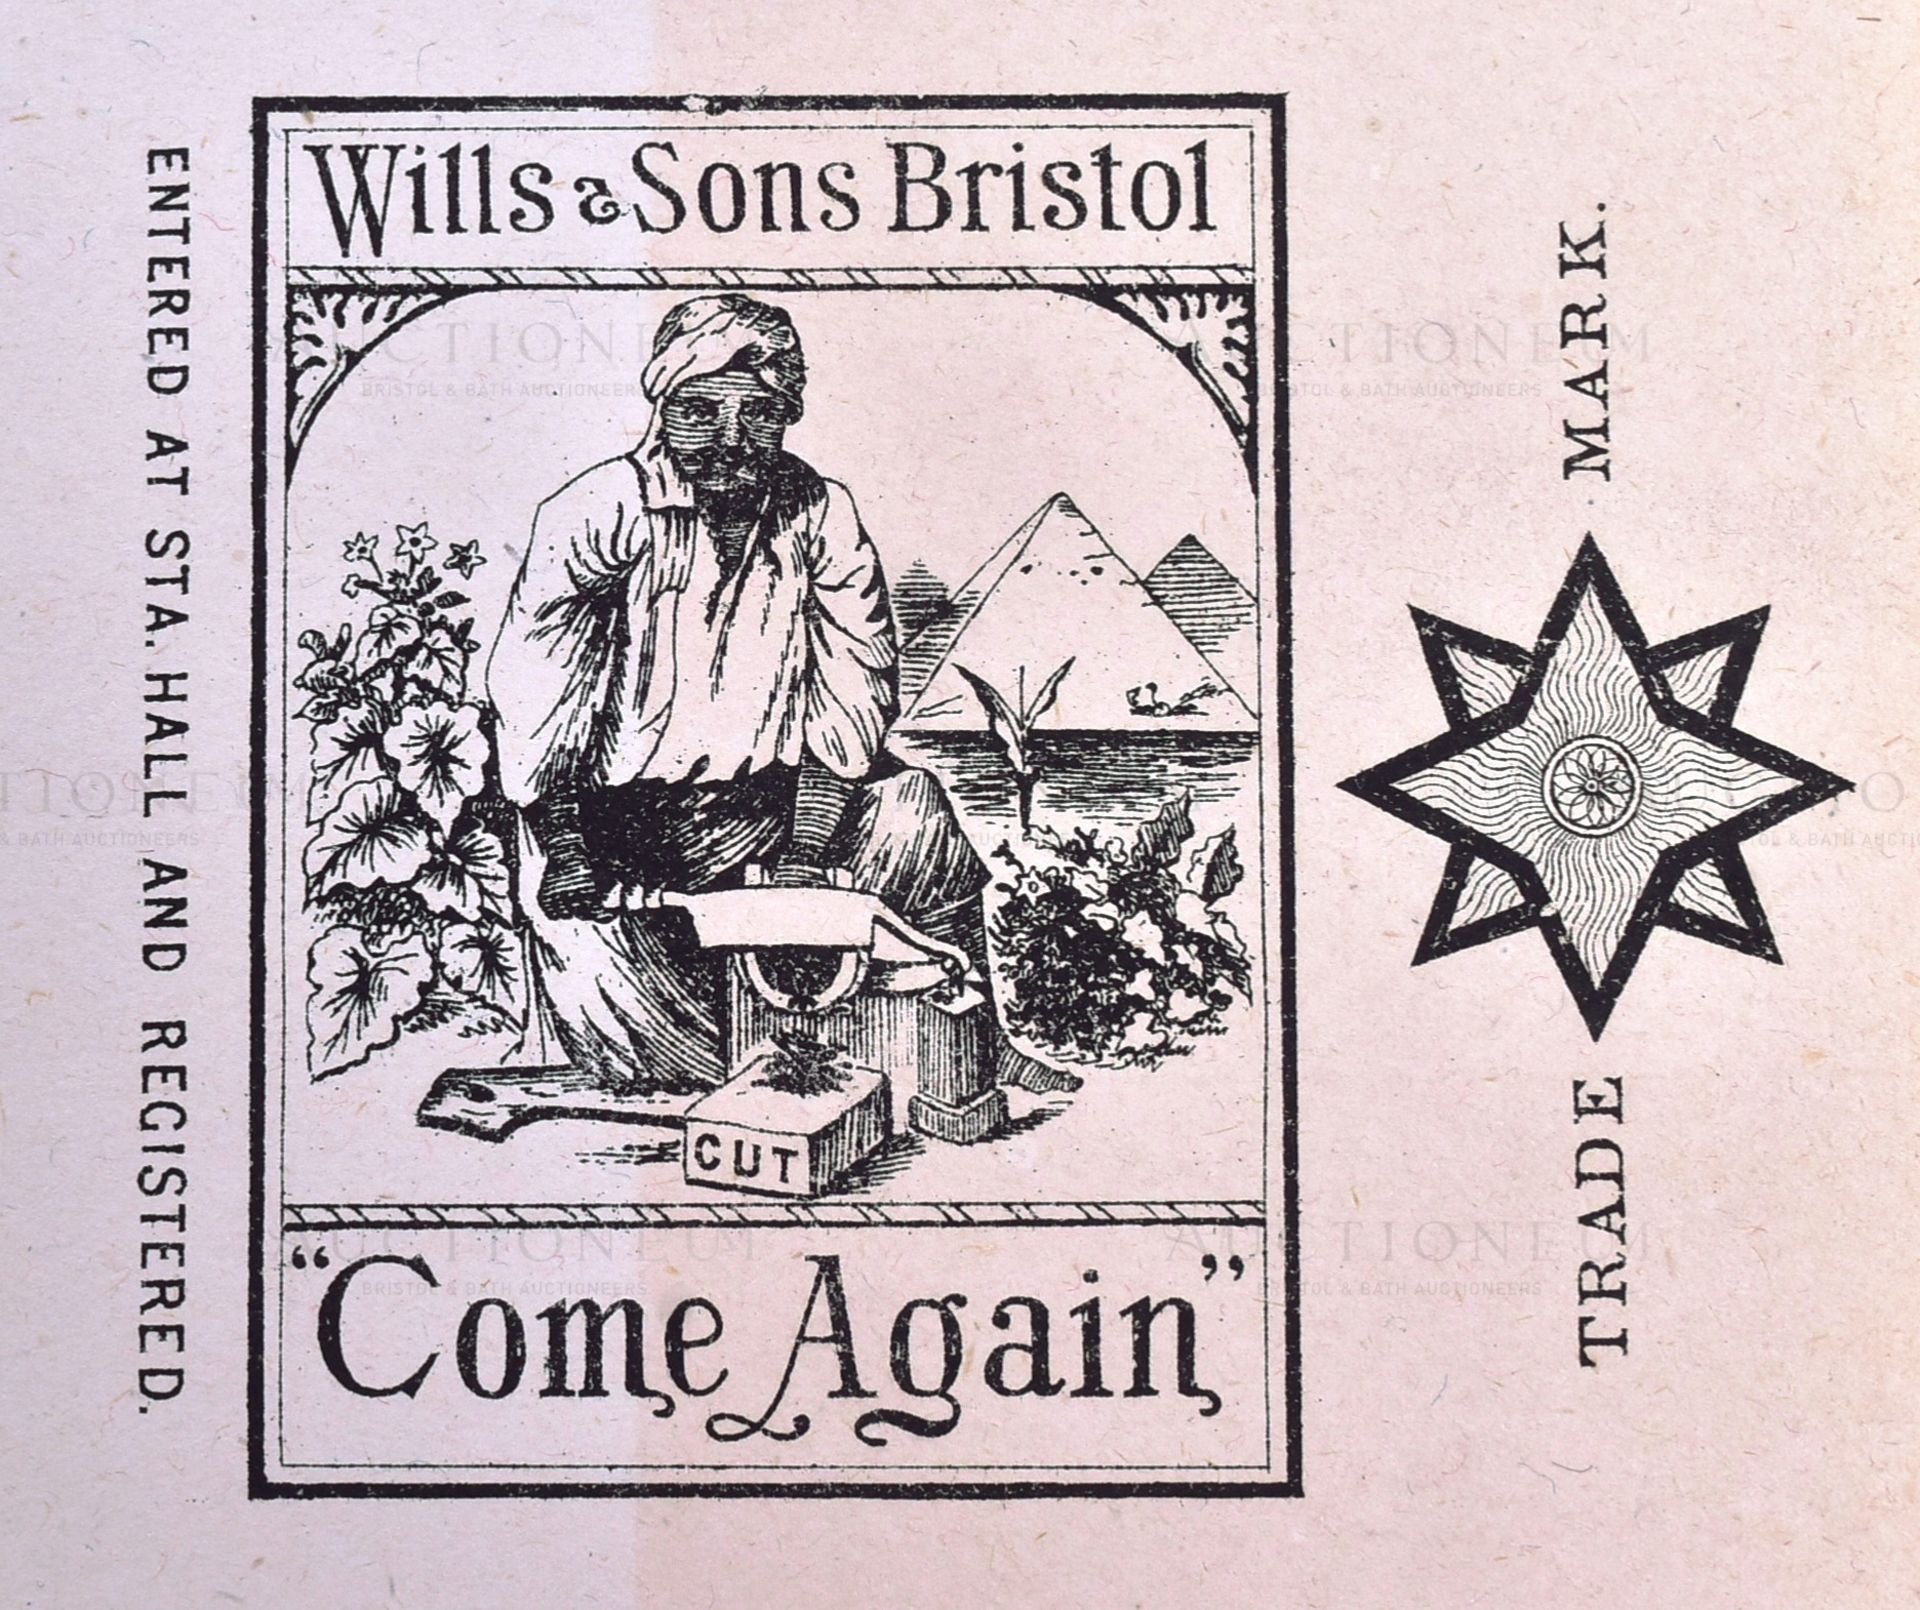 MARDON, SON & HALL - 19TH CENTURY CIGARETTE PACKET DESIGNS - Bild 2 aus 4